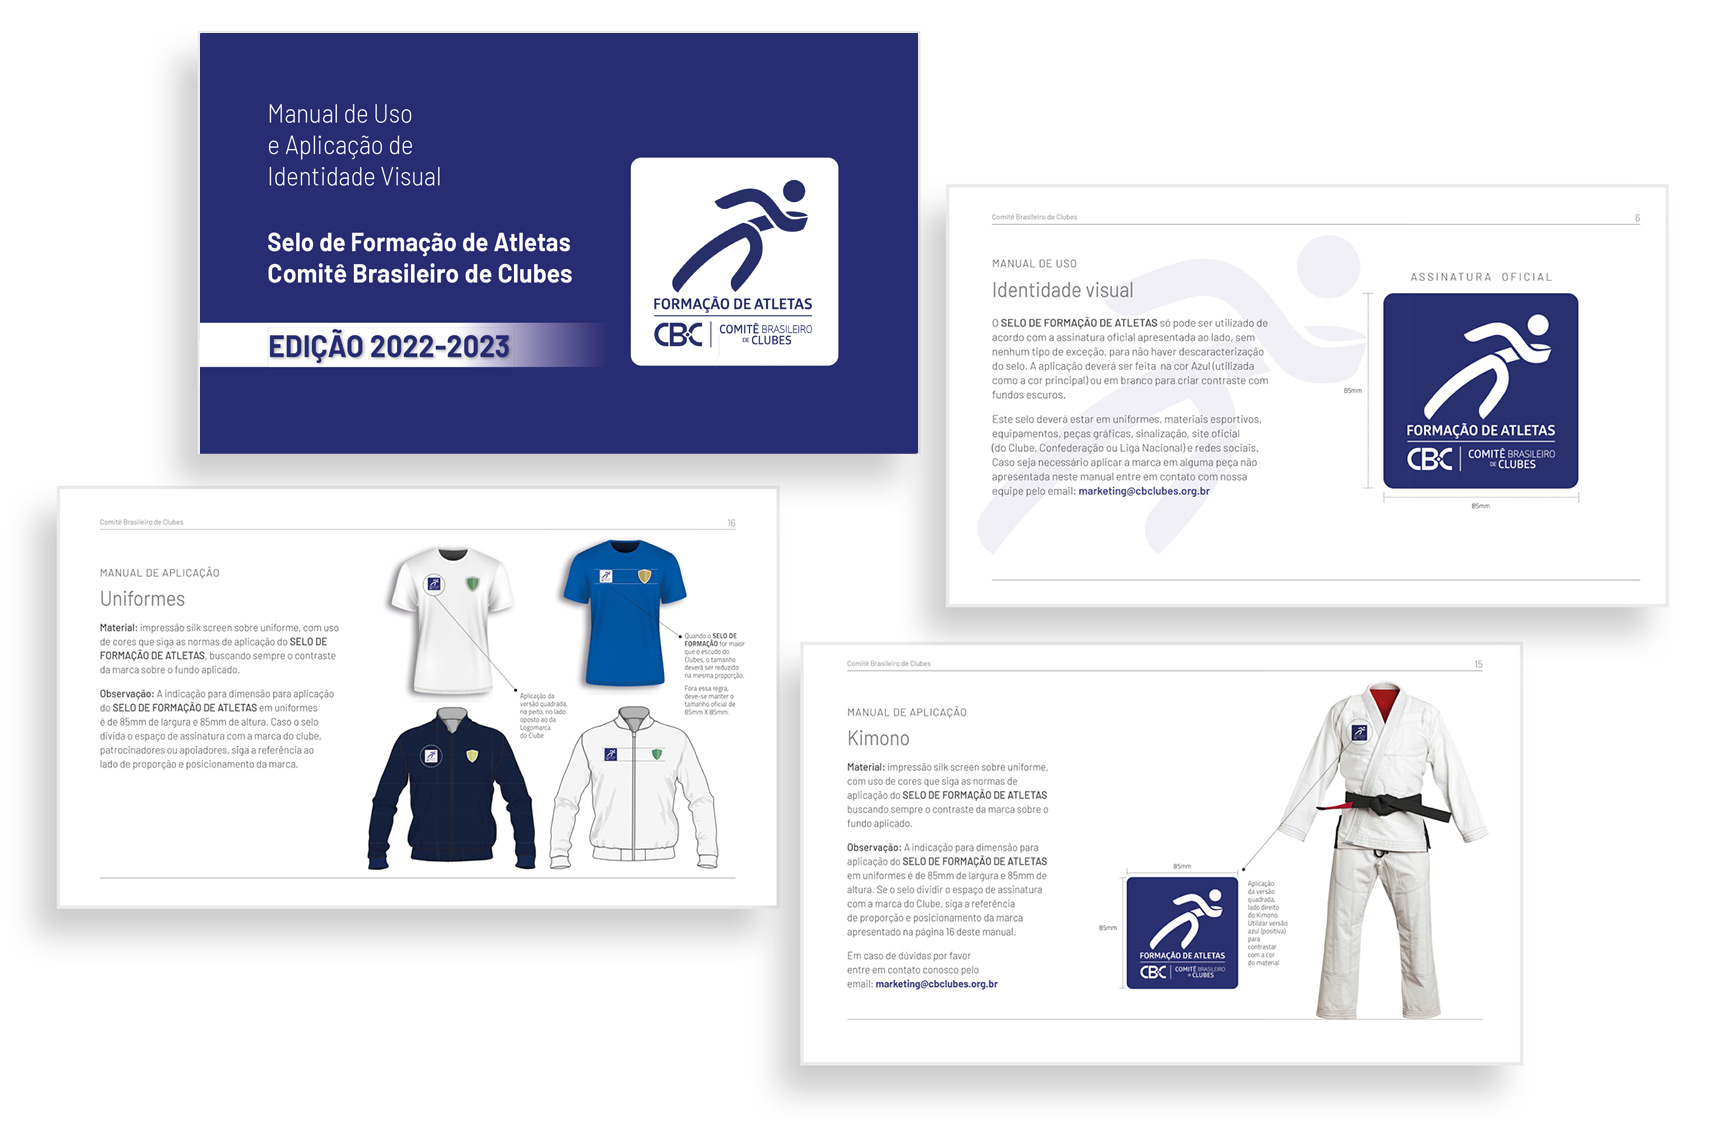 Manual Selo de Formação de Atletas 2022-2023